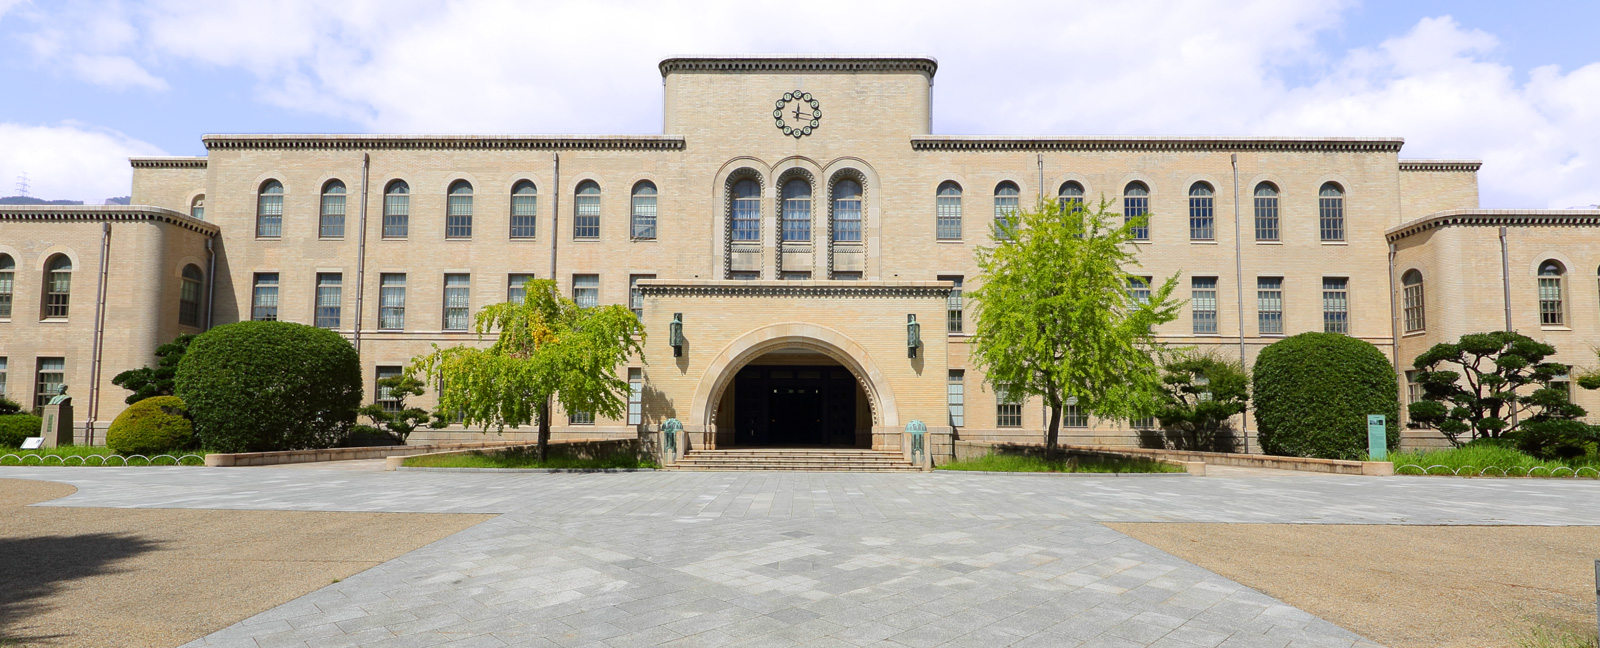 神户大学留学条件,费用及世界排名盘点